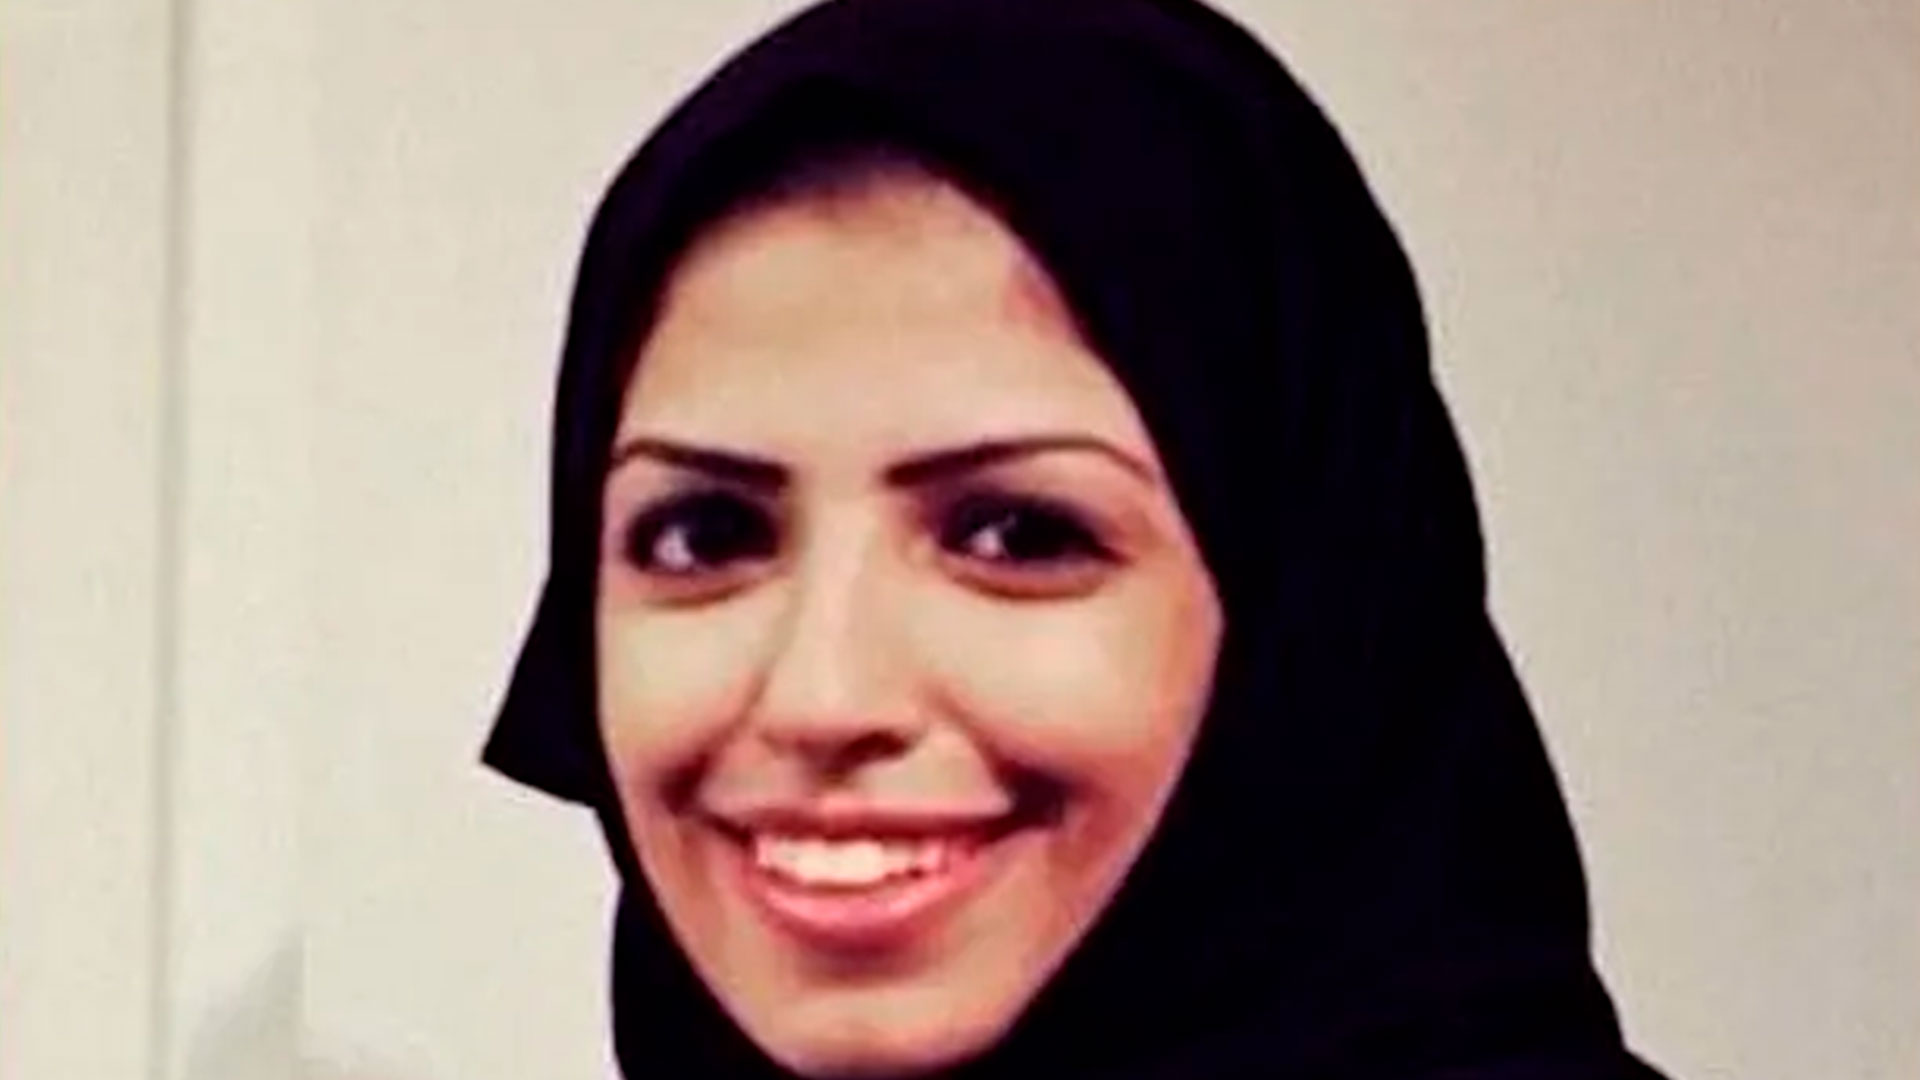 Salma al-Shehab, de 34 años, fue acusada de "ayudar a quienes buscan causar disturbios públicos y desestabilizar la seguridad civil y nacional siguiendo sus cuentas de Twitter". Fotografía: democracia ahora